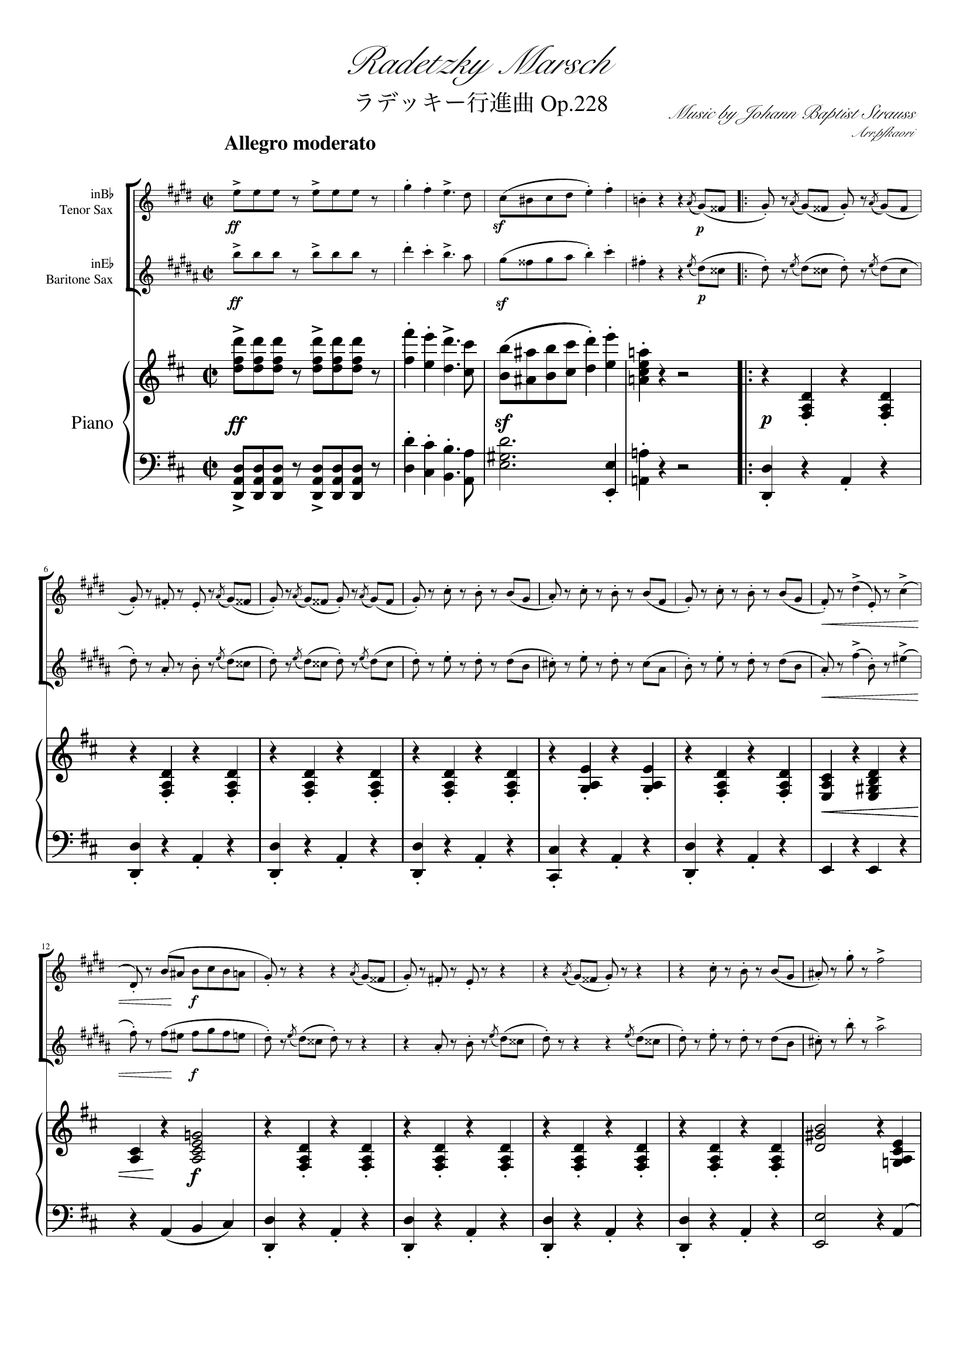 ヨハンシュトラウス1世 - ラデッキー行進曲 (D・ピアノトリオ/テナーサックス&バリトンサック) by pfkaori